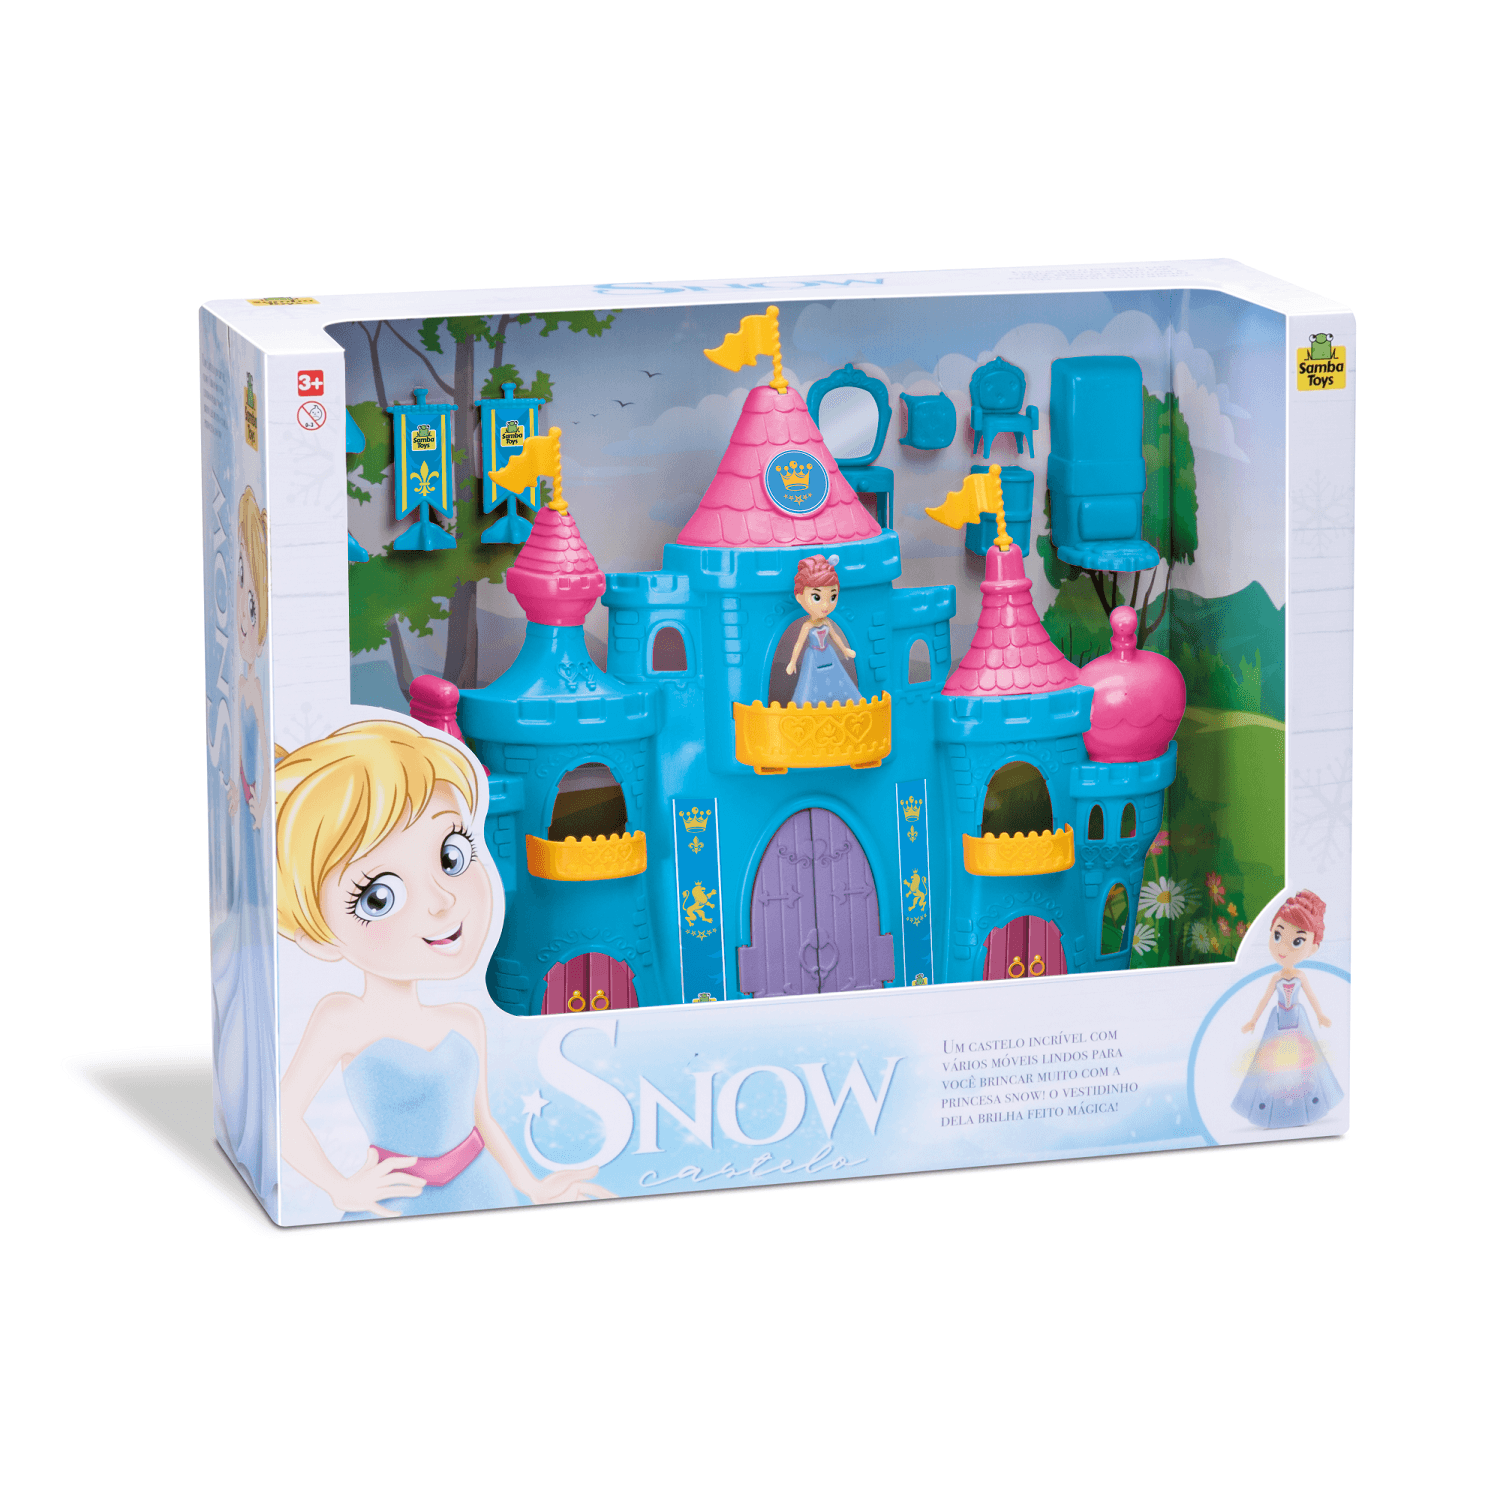 Castelo Princesa Snow Samba Toys 0407